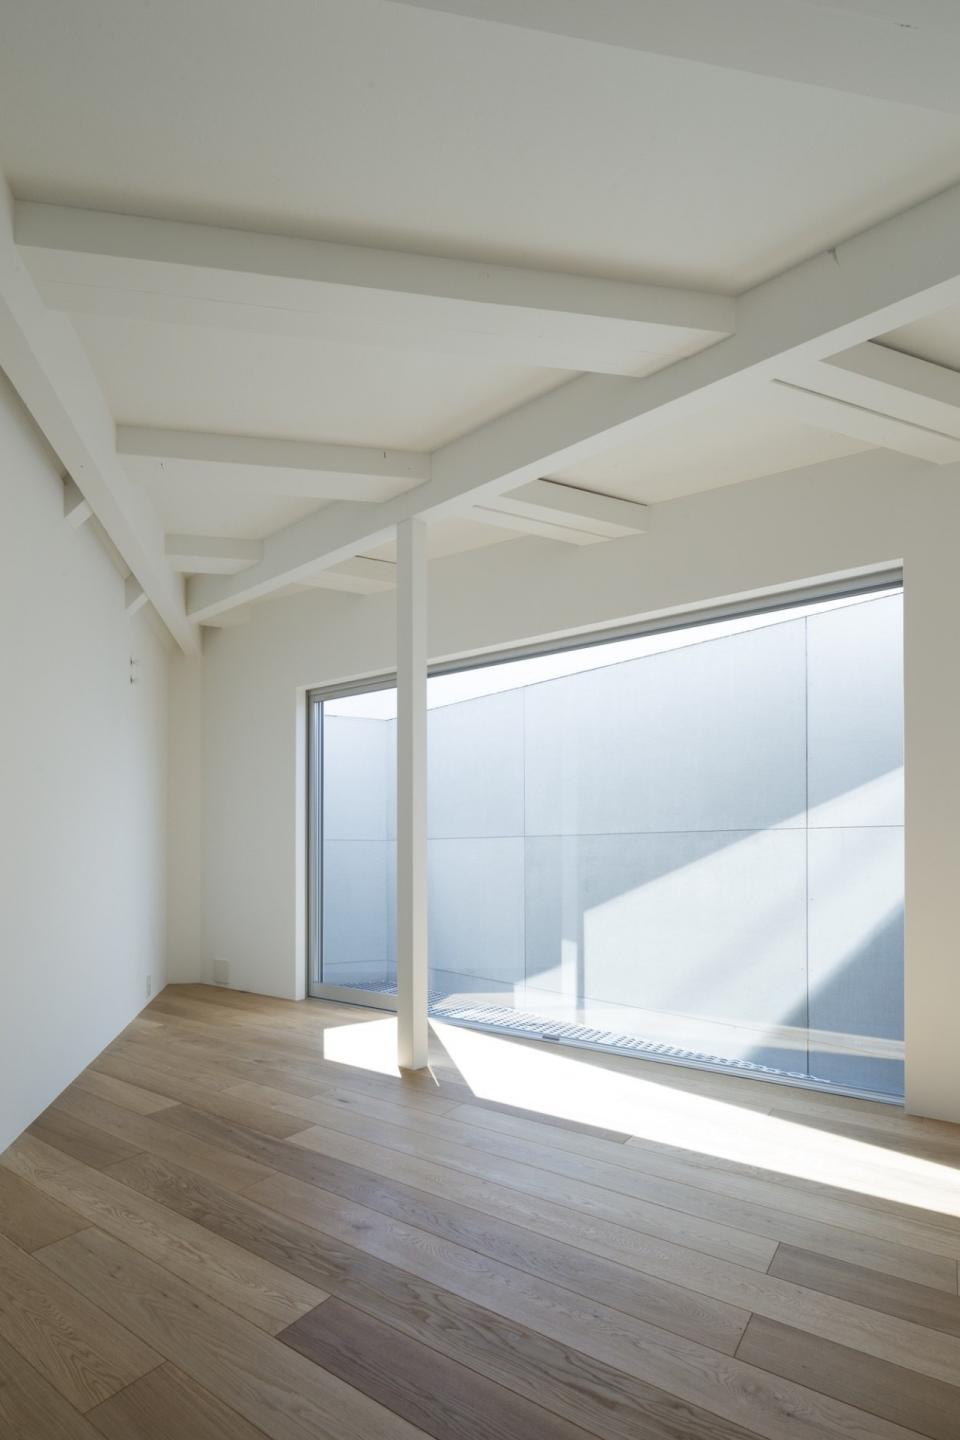 東京極簡三角住宅 幾何規劃增加空間感